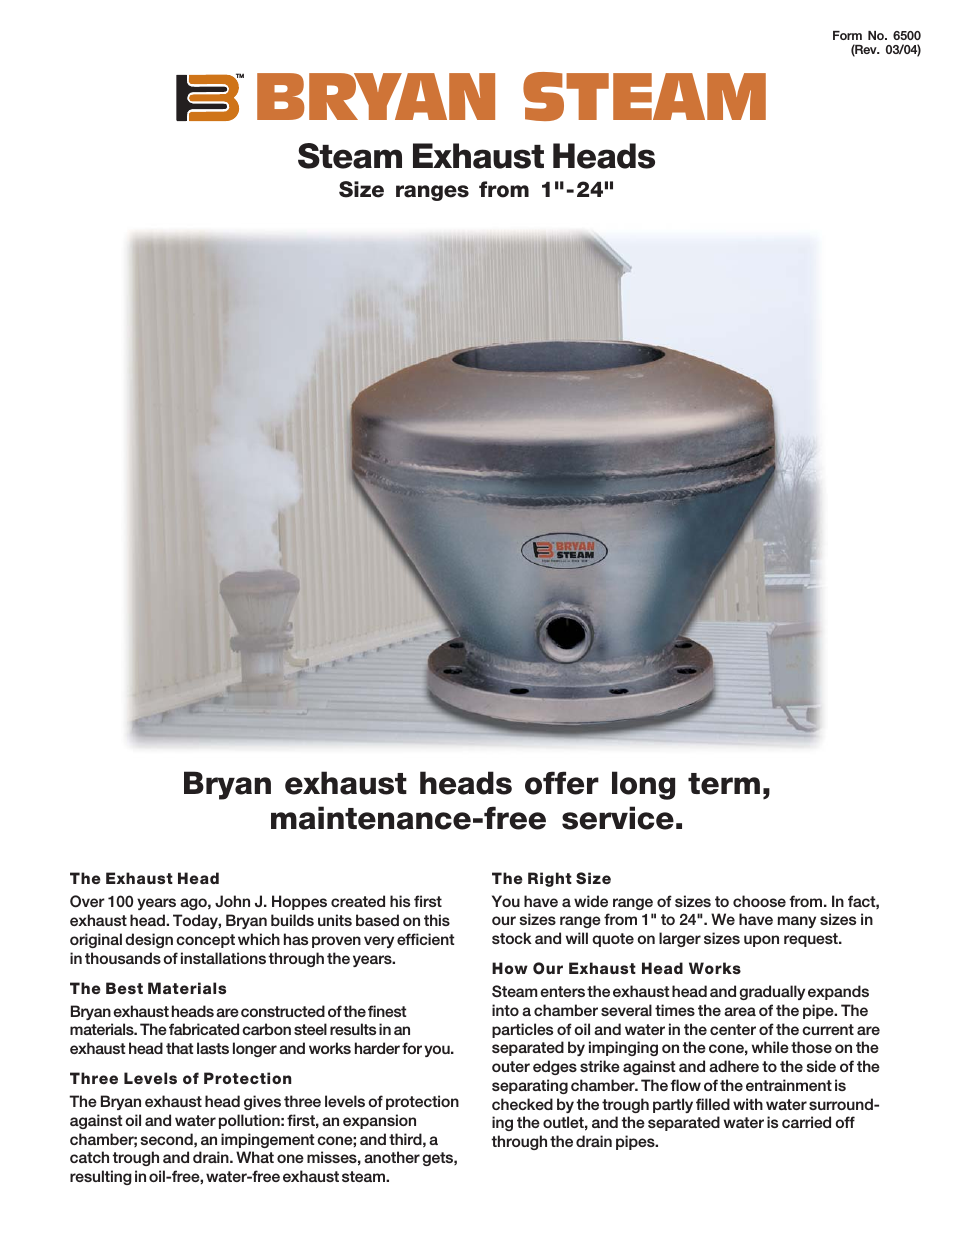 Steam Exhaust Heads None